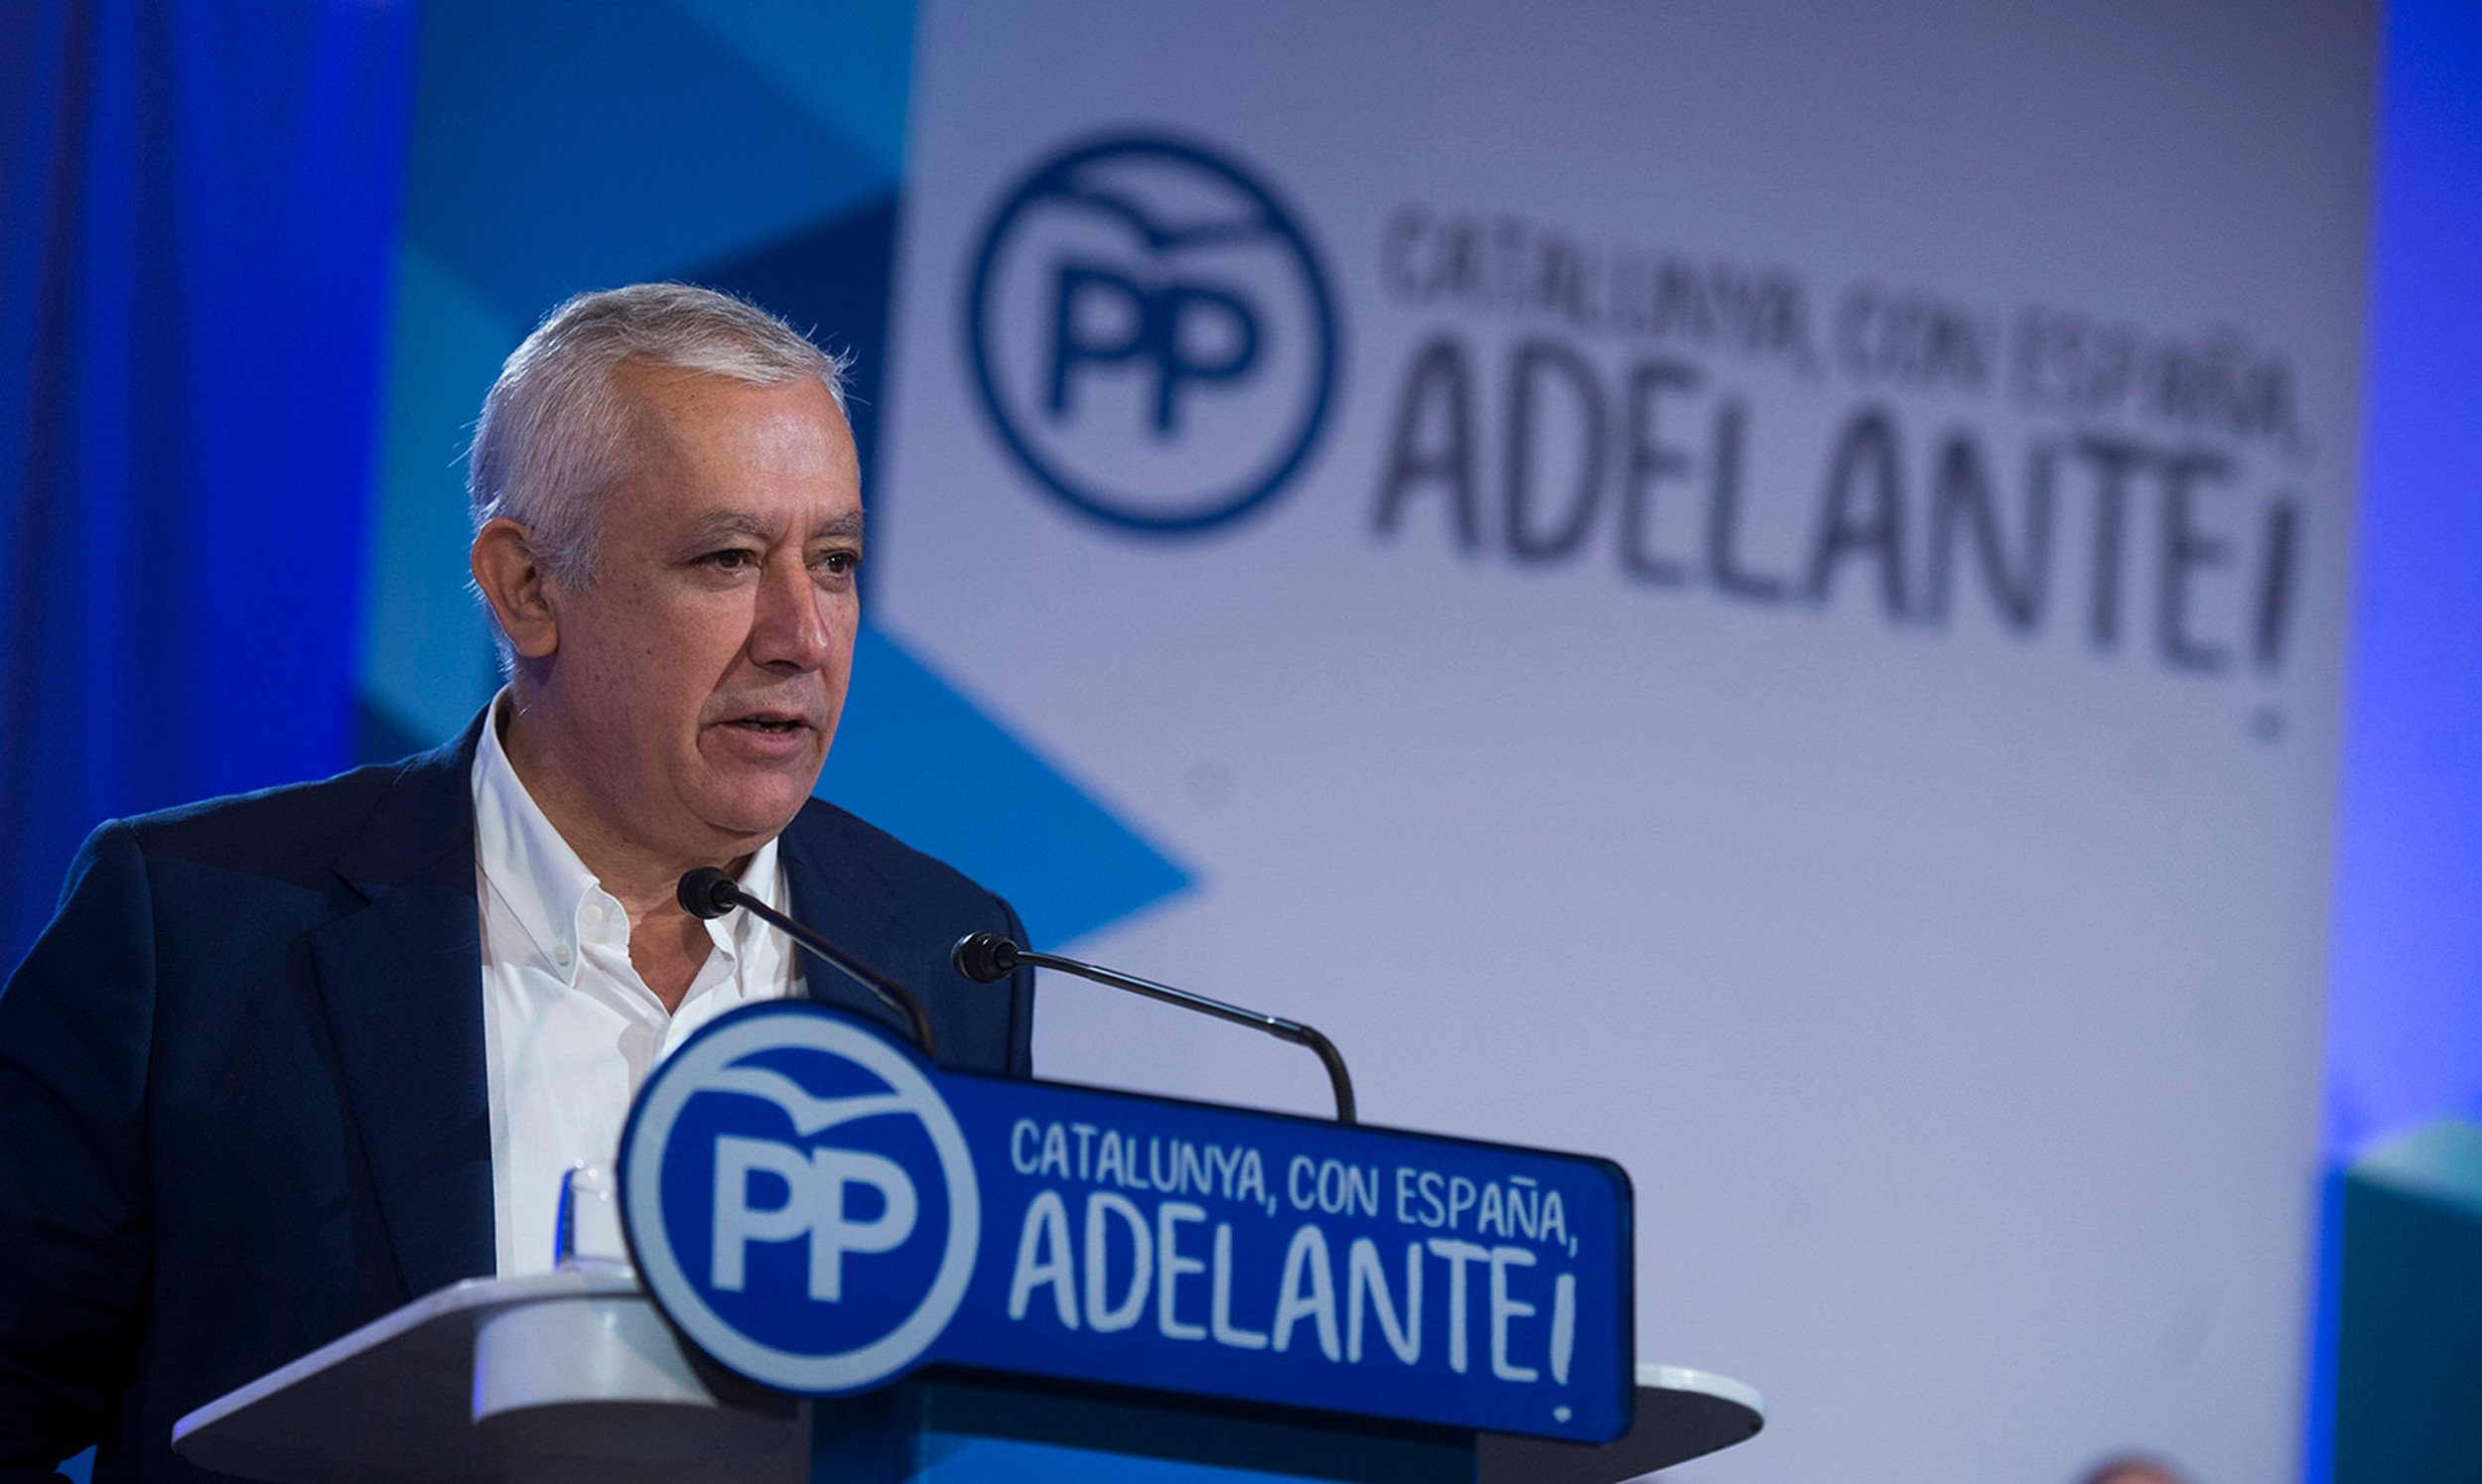 El PP advierte que reaccionará con "medida" y "no caerá en la trampa" de Puigdemont